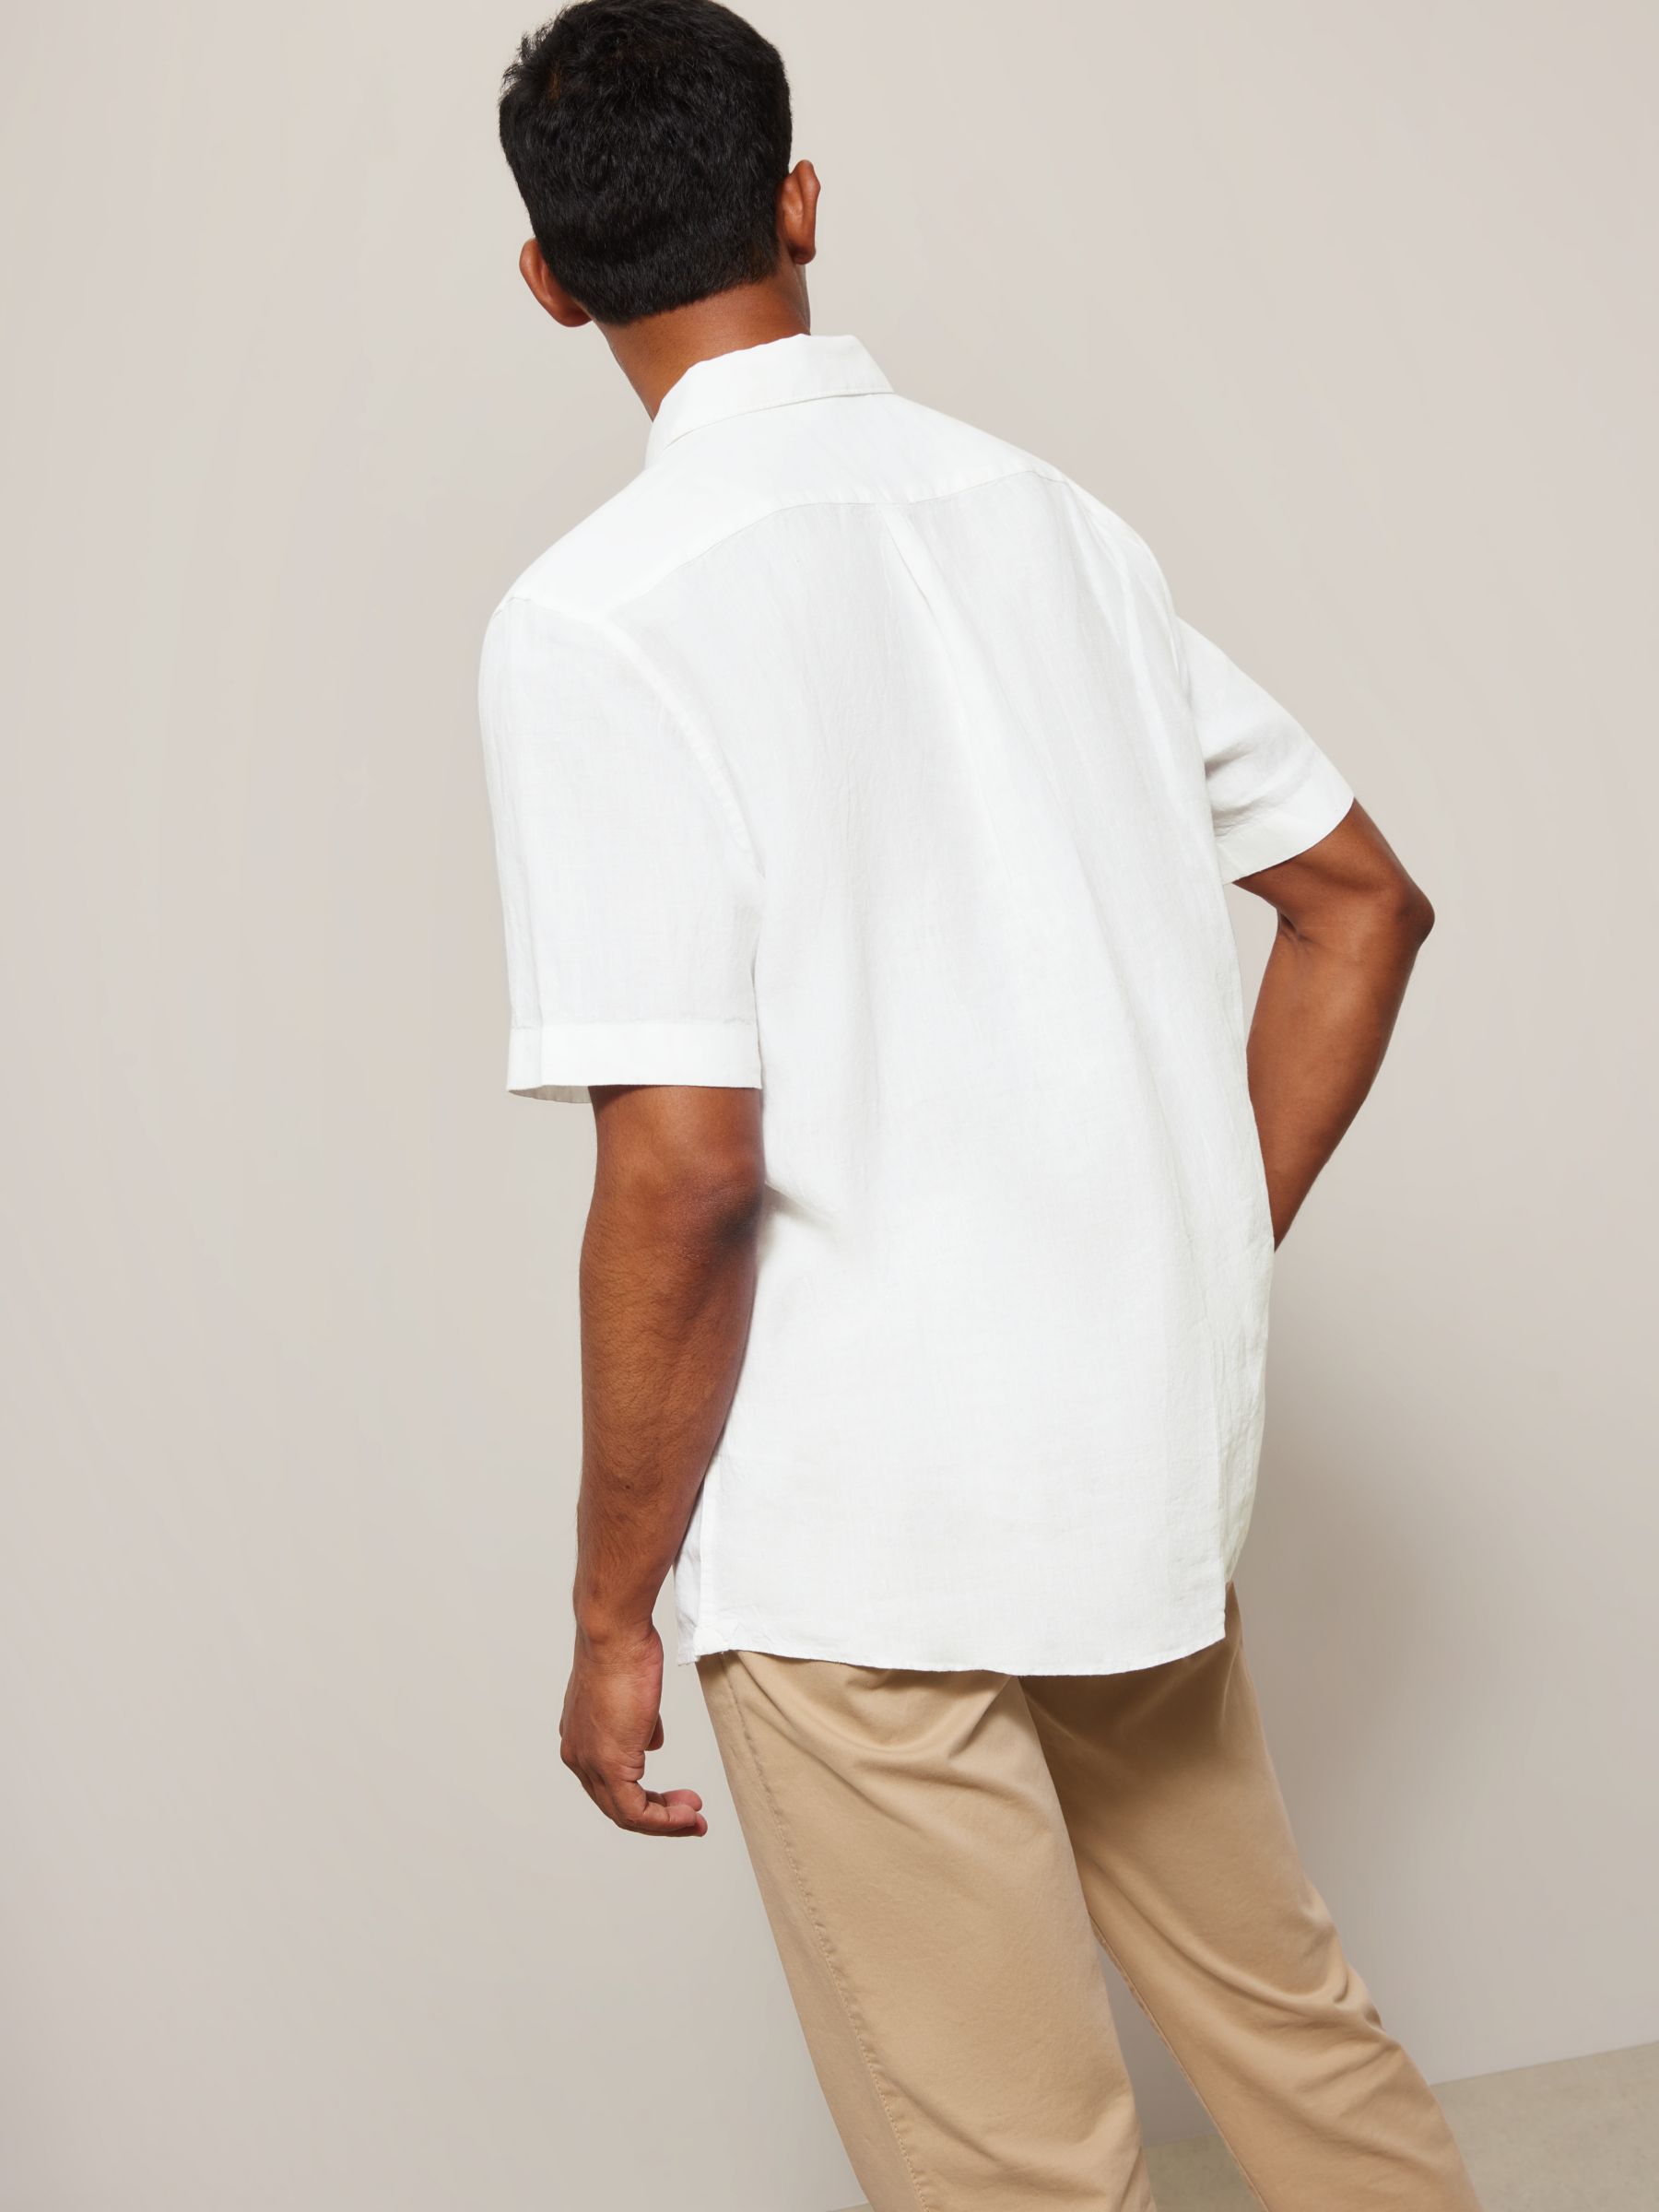 John Lewis Linen Regular Fit Shirt, White, S